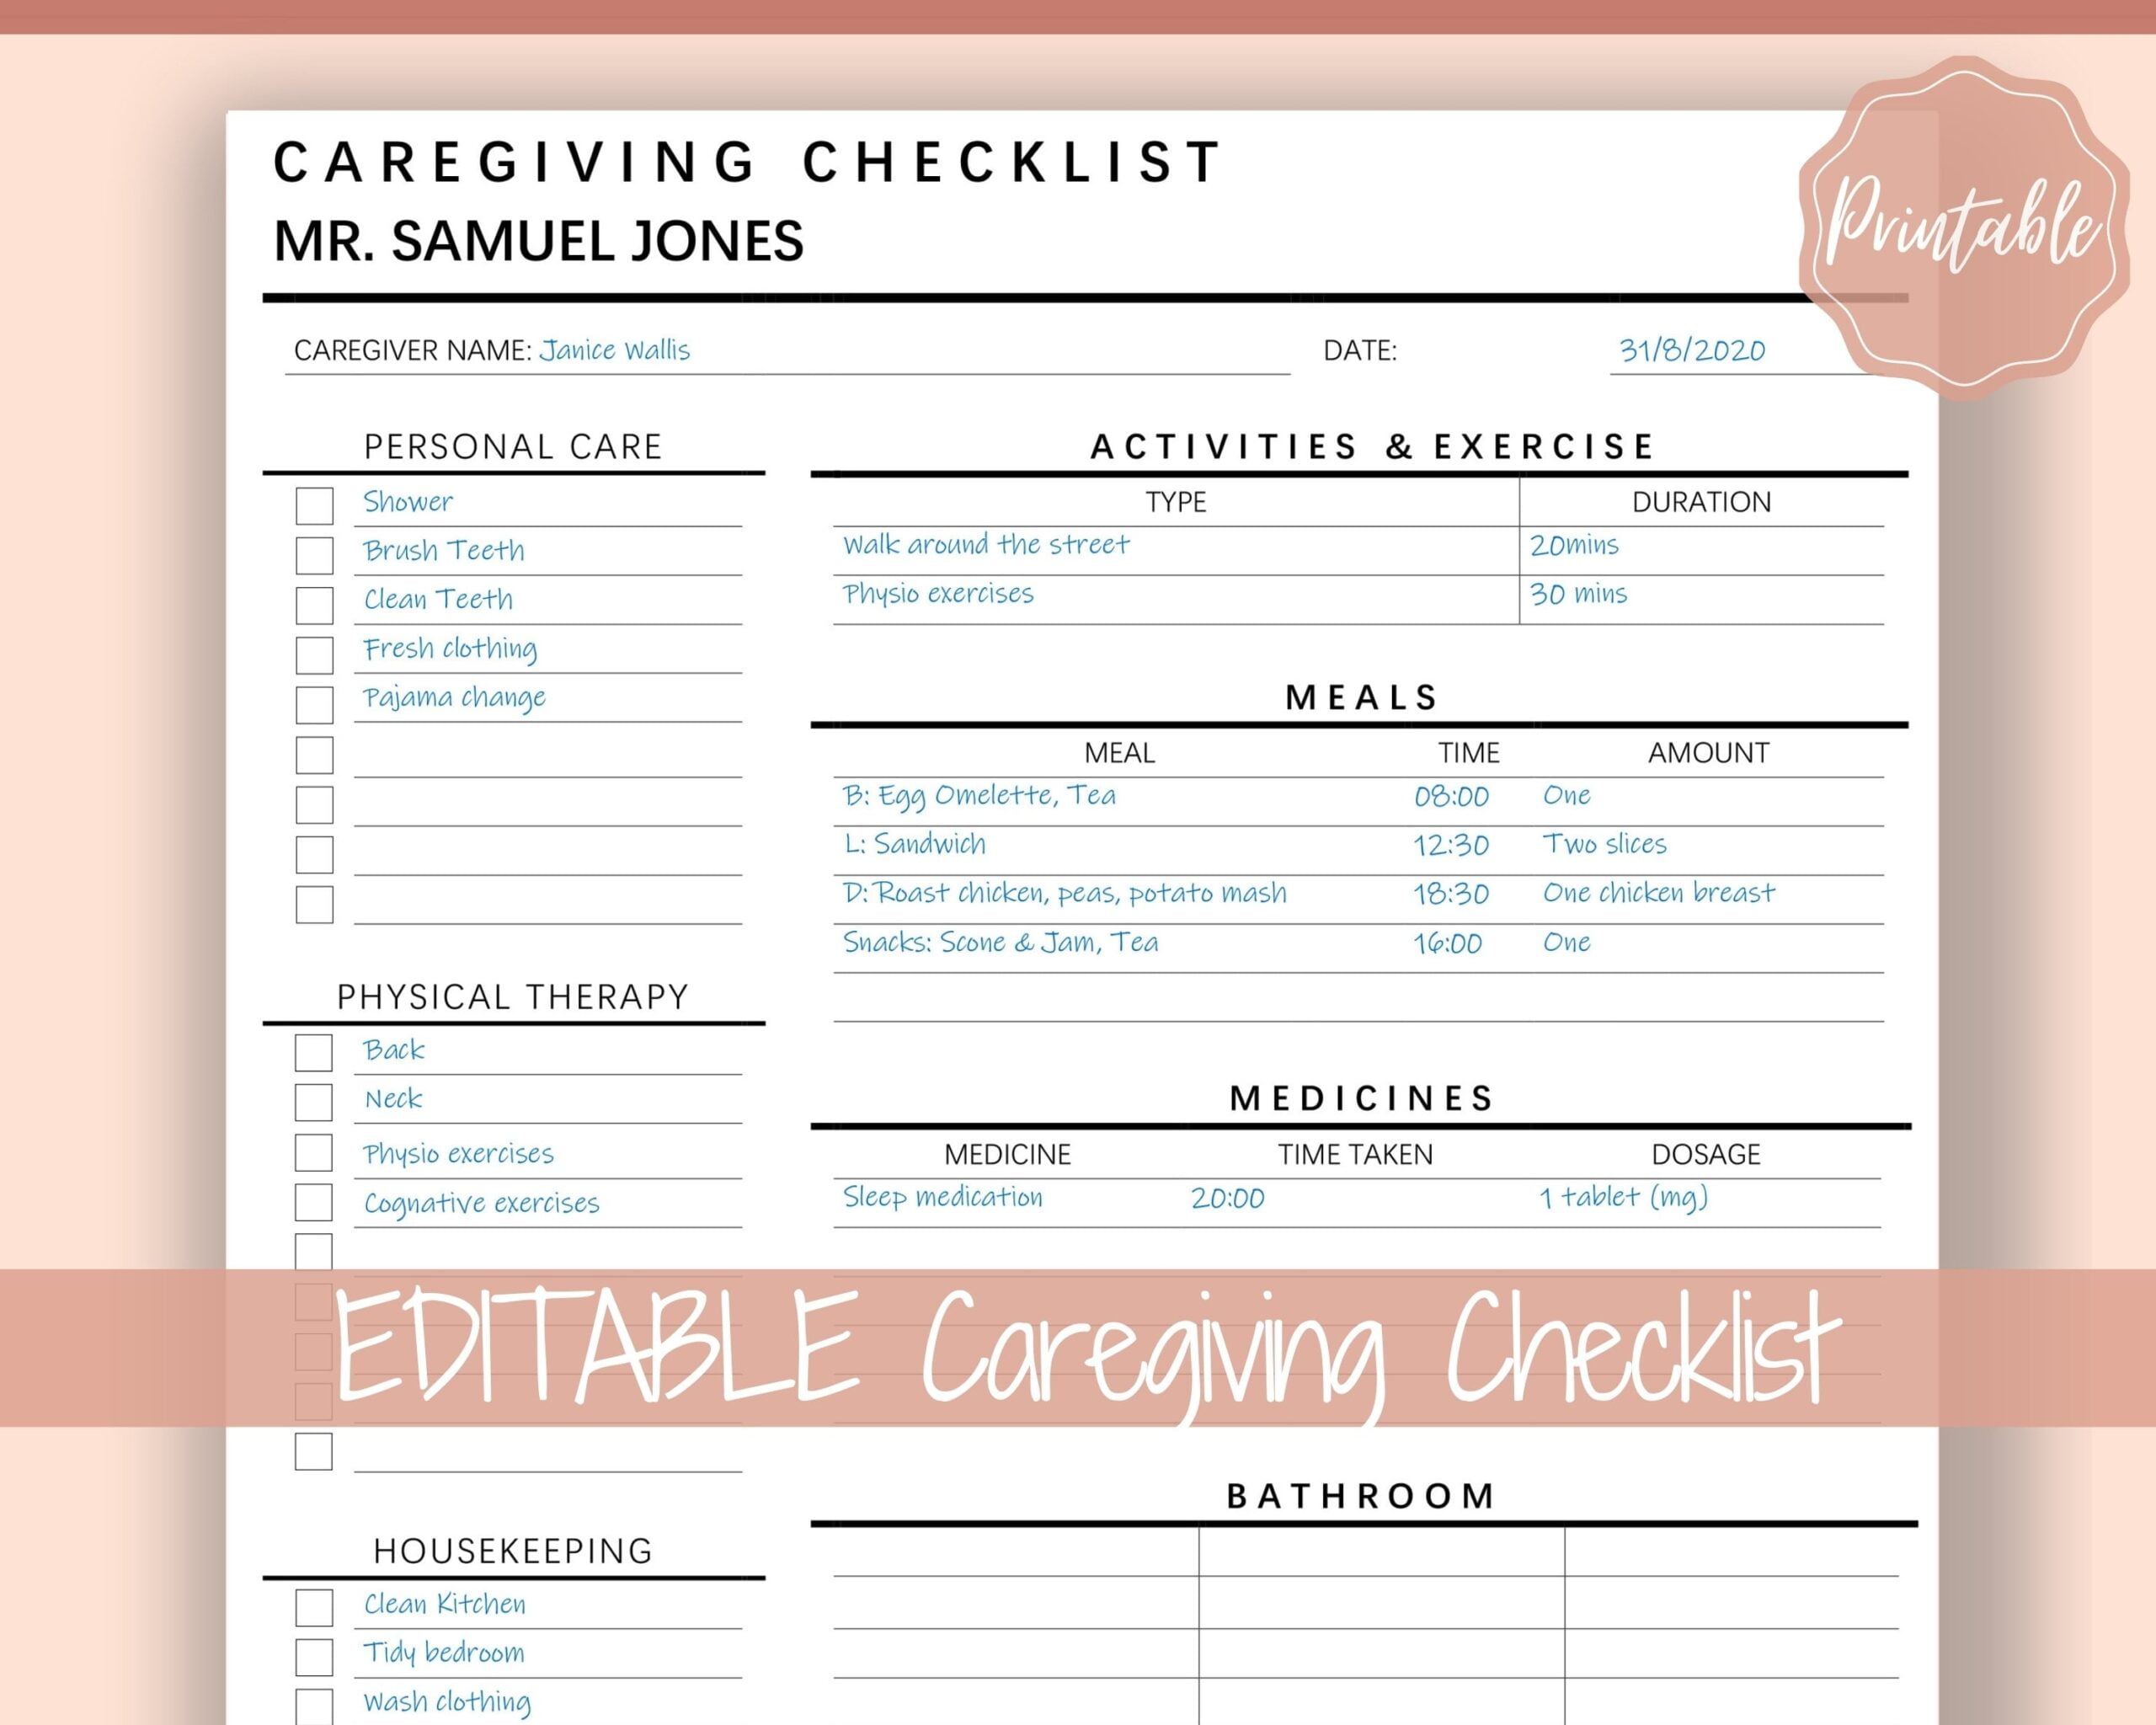 Caregiving Elderly Care Checklist EDITABLE Printable Is Ideal Etsy de